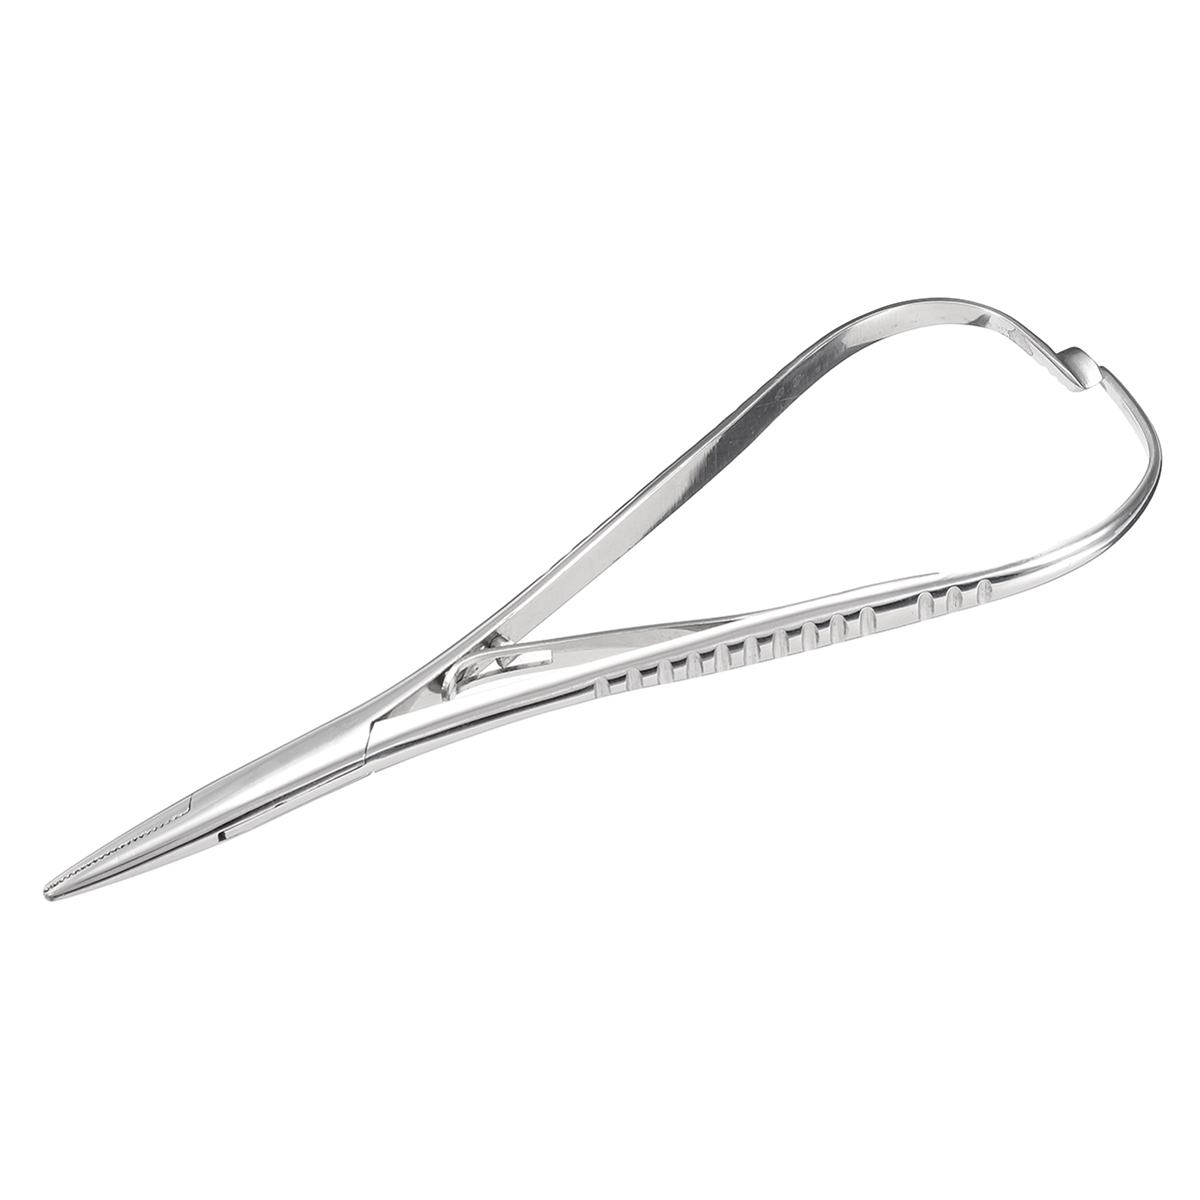 Dental-Stainless-Steel-Needle-Holder-Pliers-14cm-Forceps-Orthodontic-Dentist-Tweezers-1282801